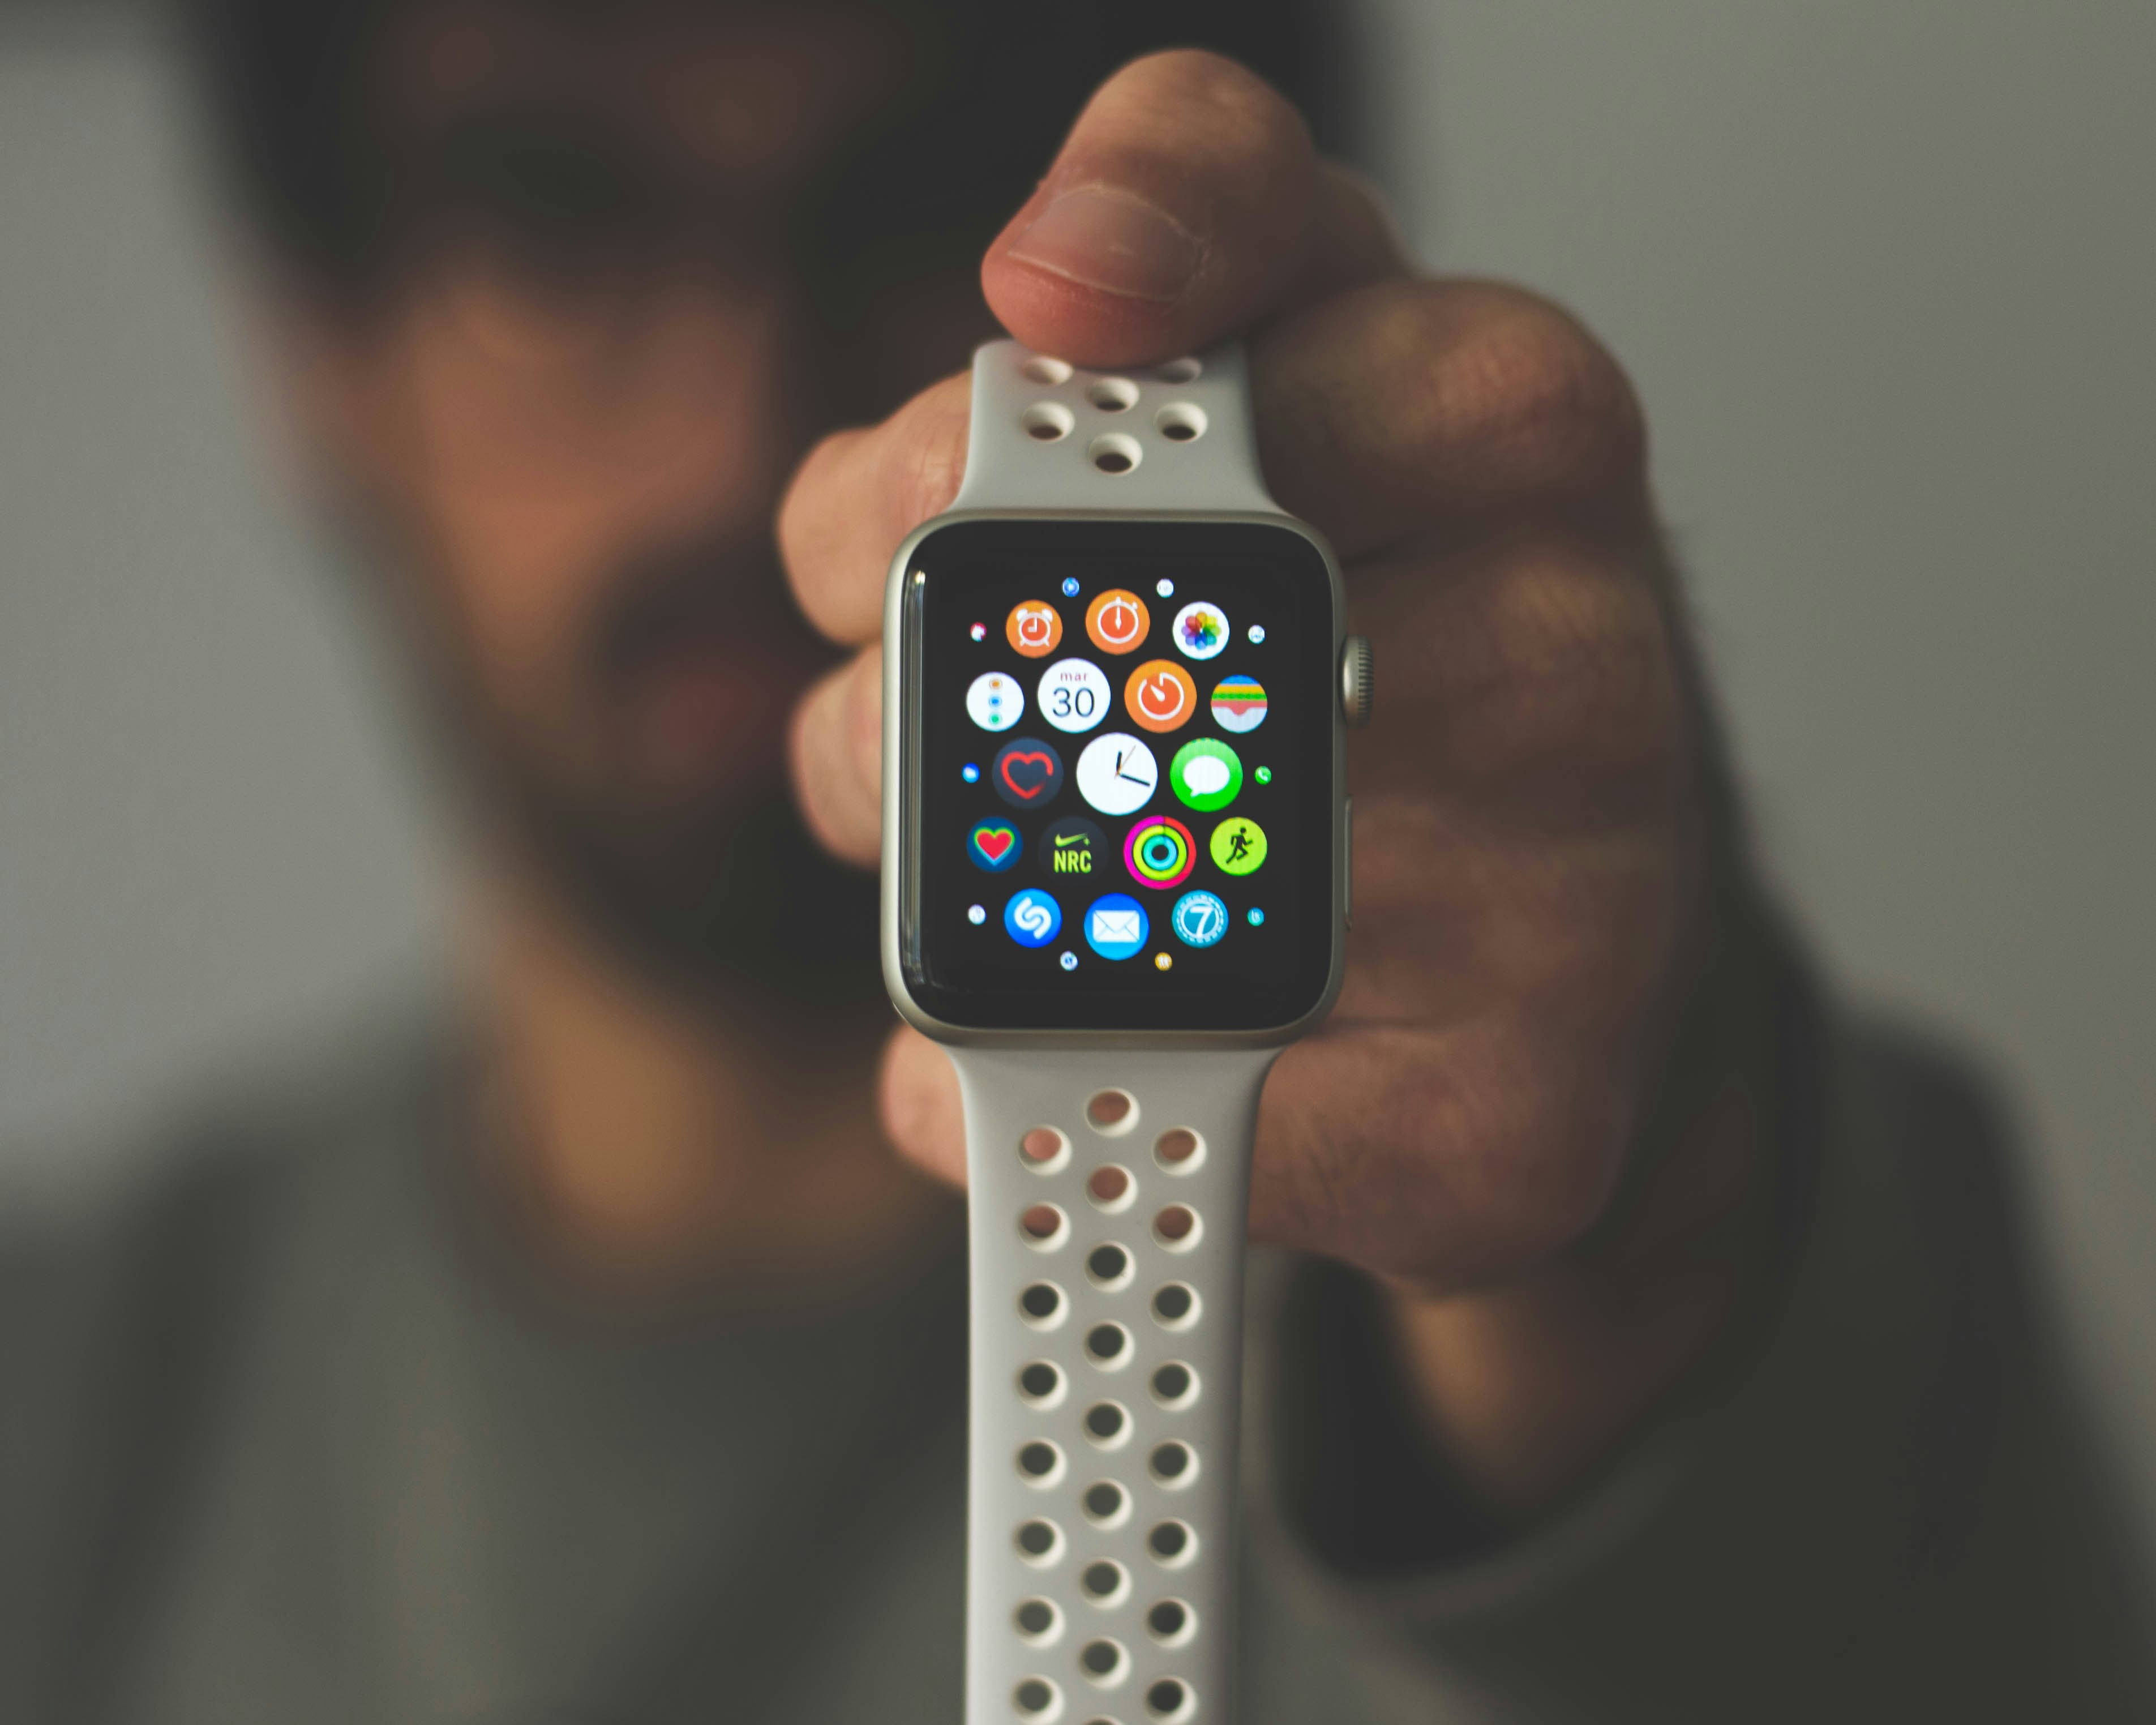 ¿Por qué debería adquirir un Apple Watch con e-SIM? - imagen de noticias en imei.info